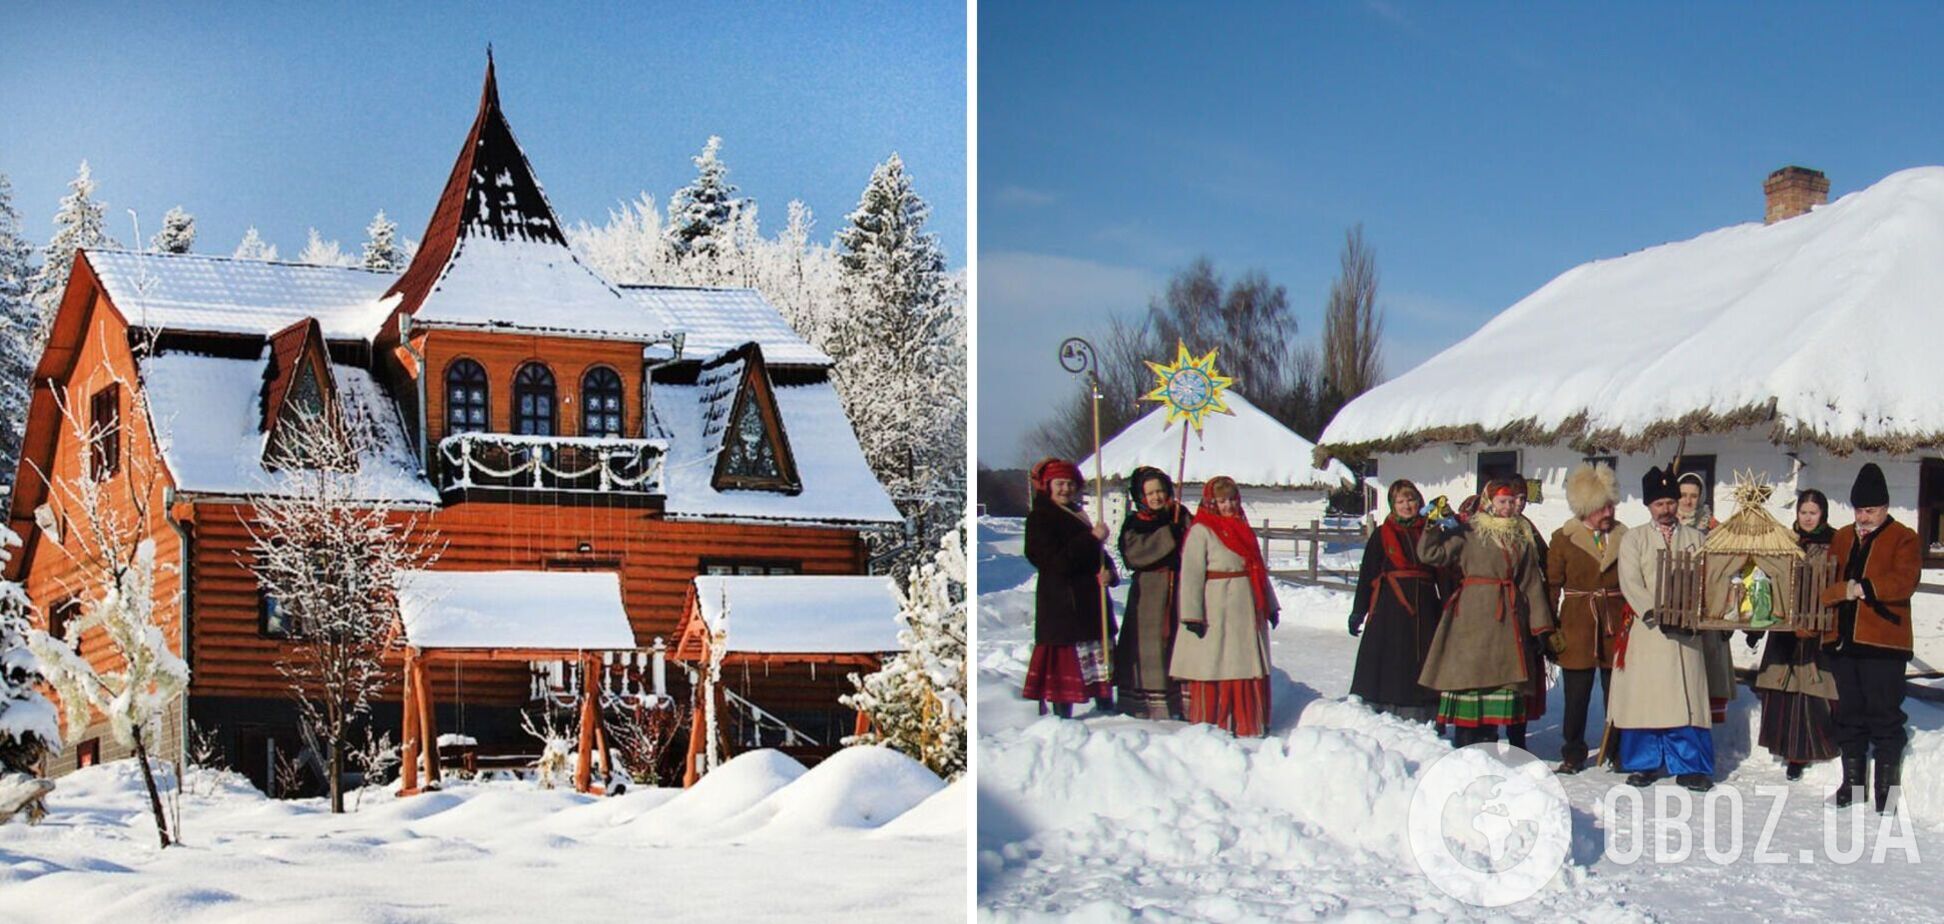 Не только Карпаты: самые популярные места в Украине для зимнего отдыха